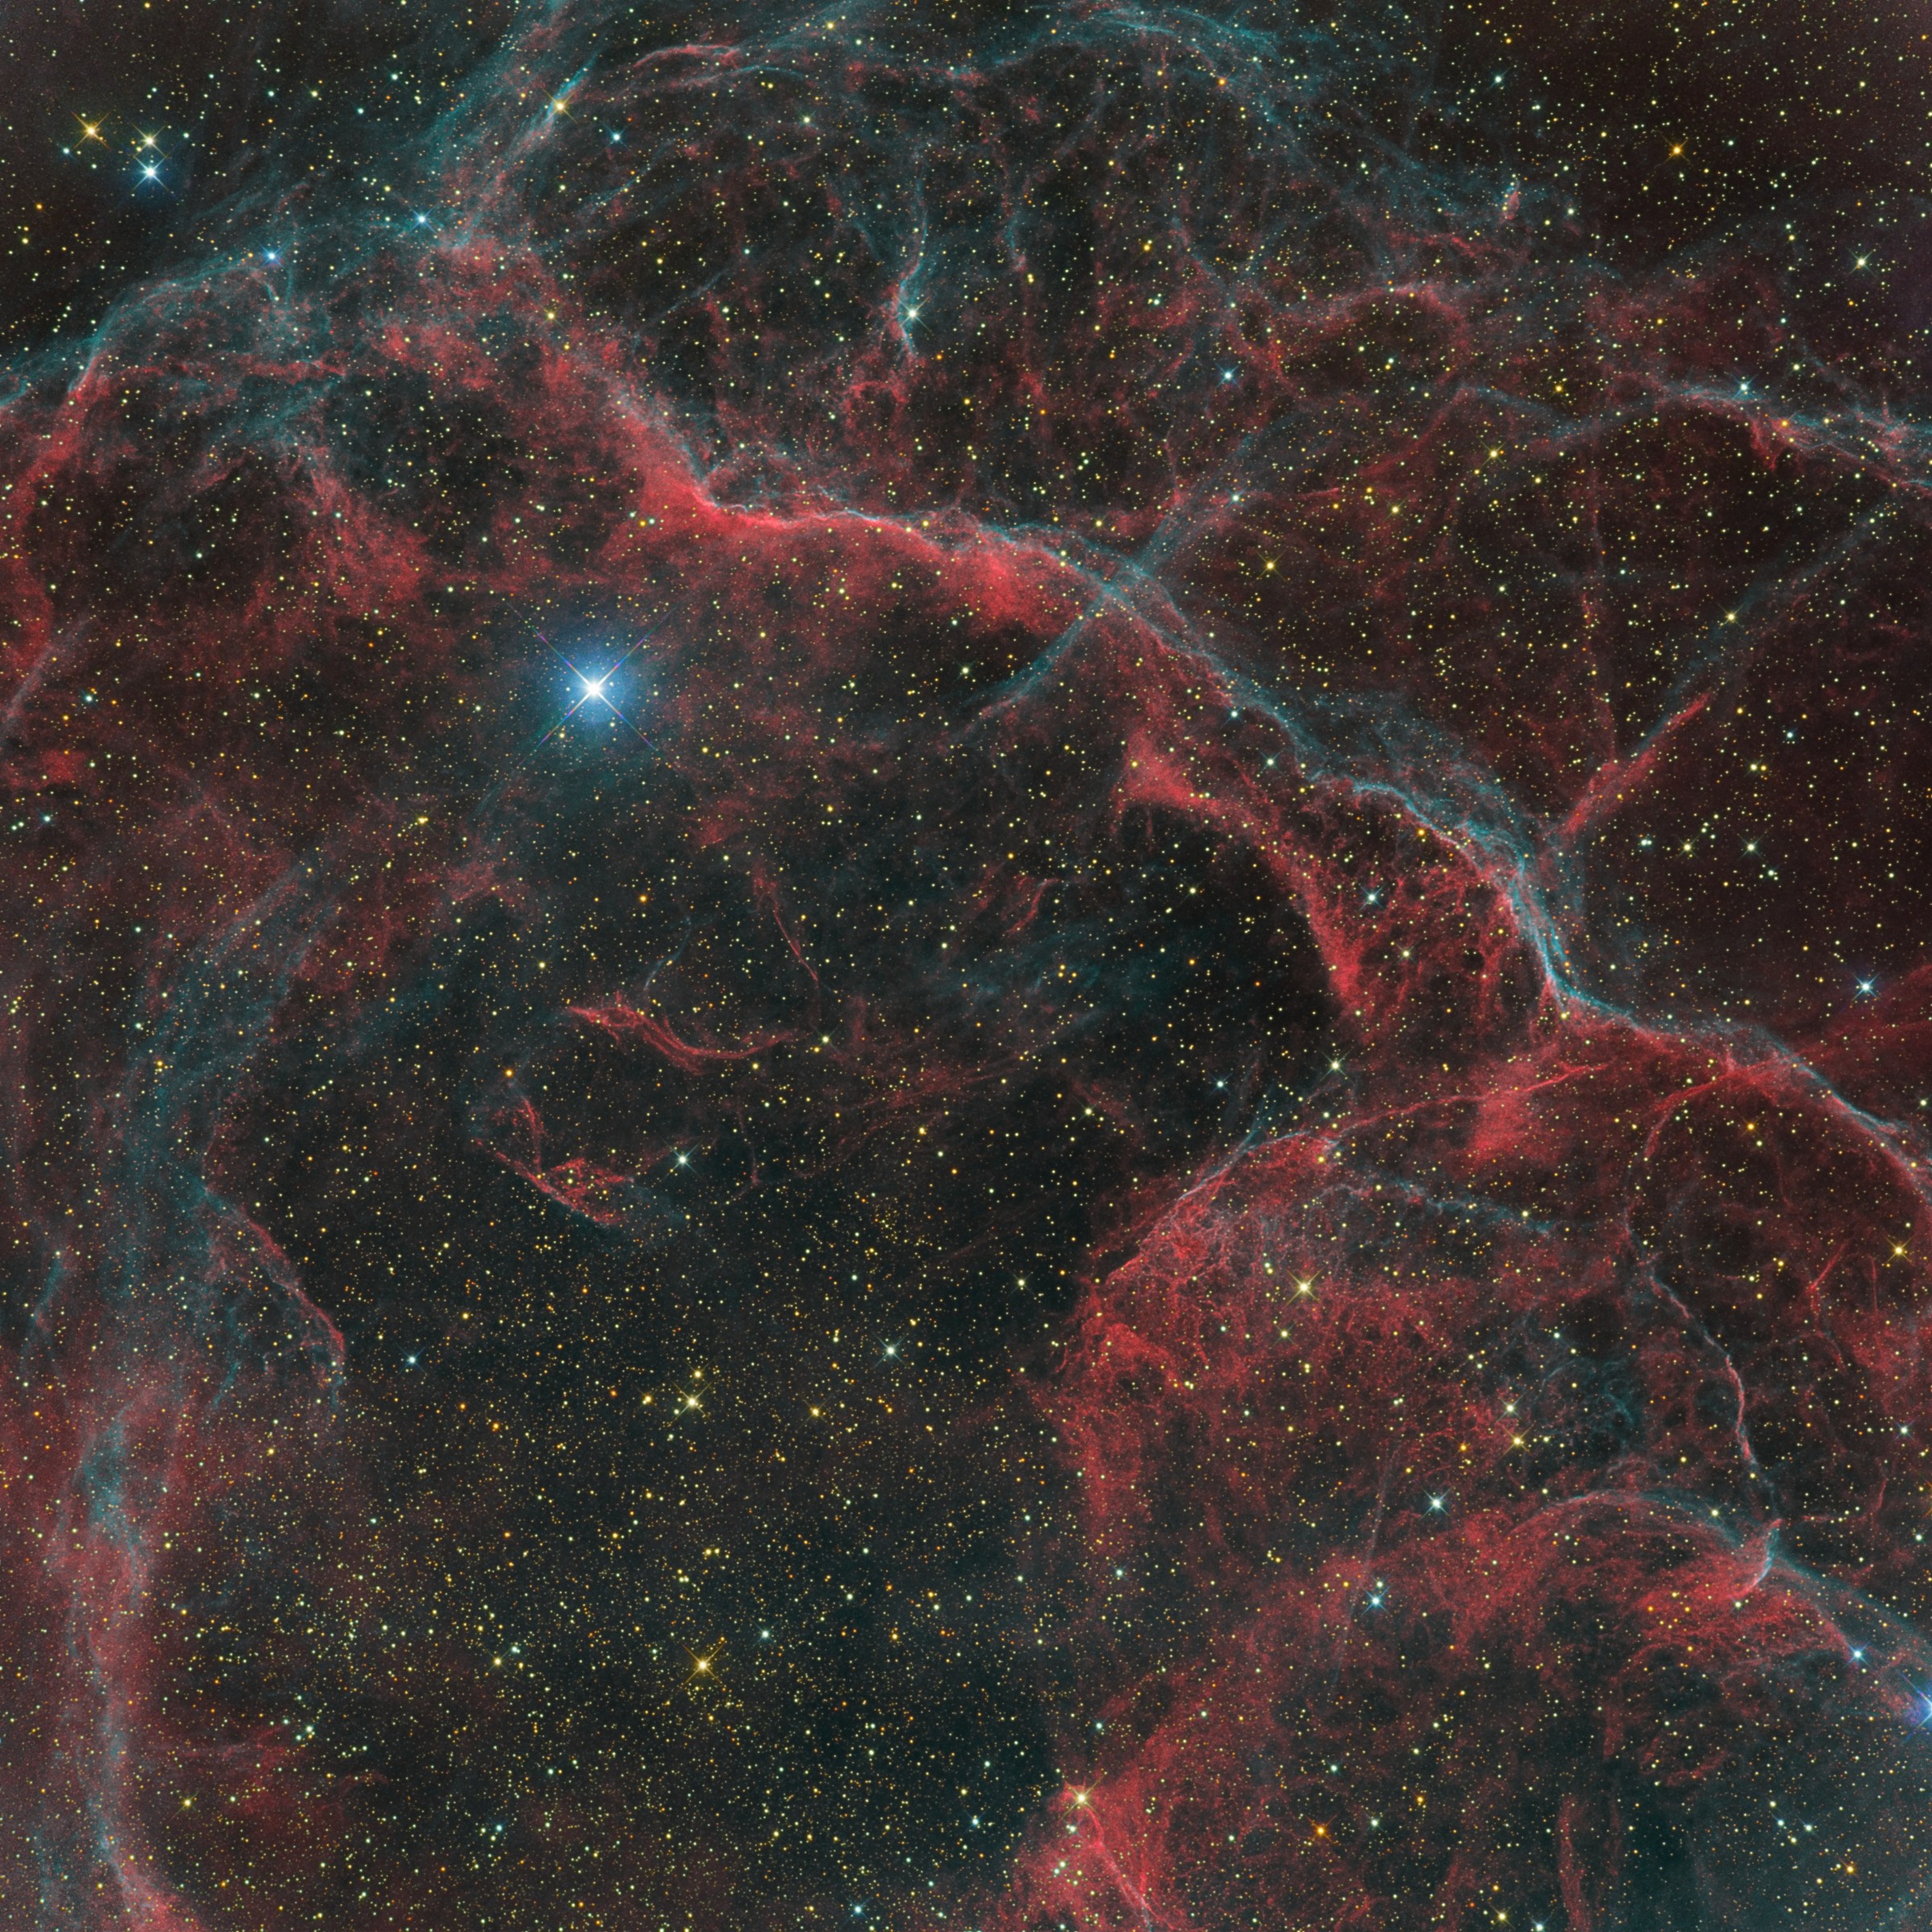 Supernova remnant in Vela